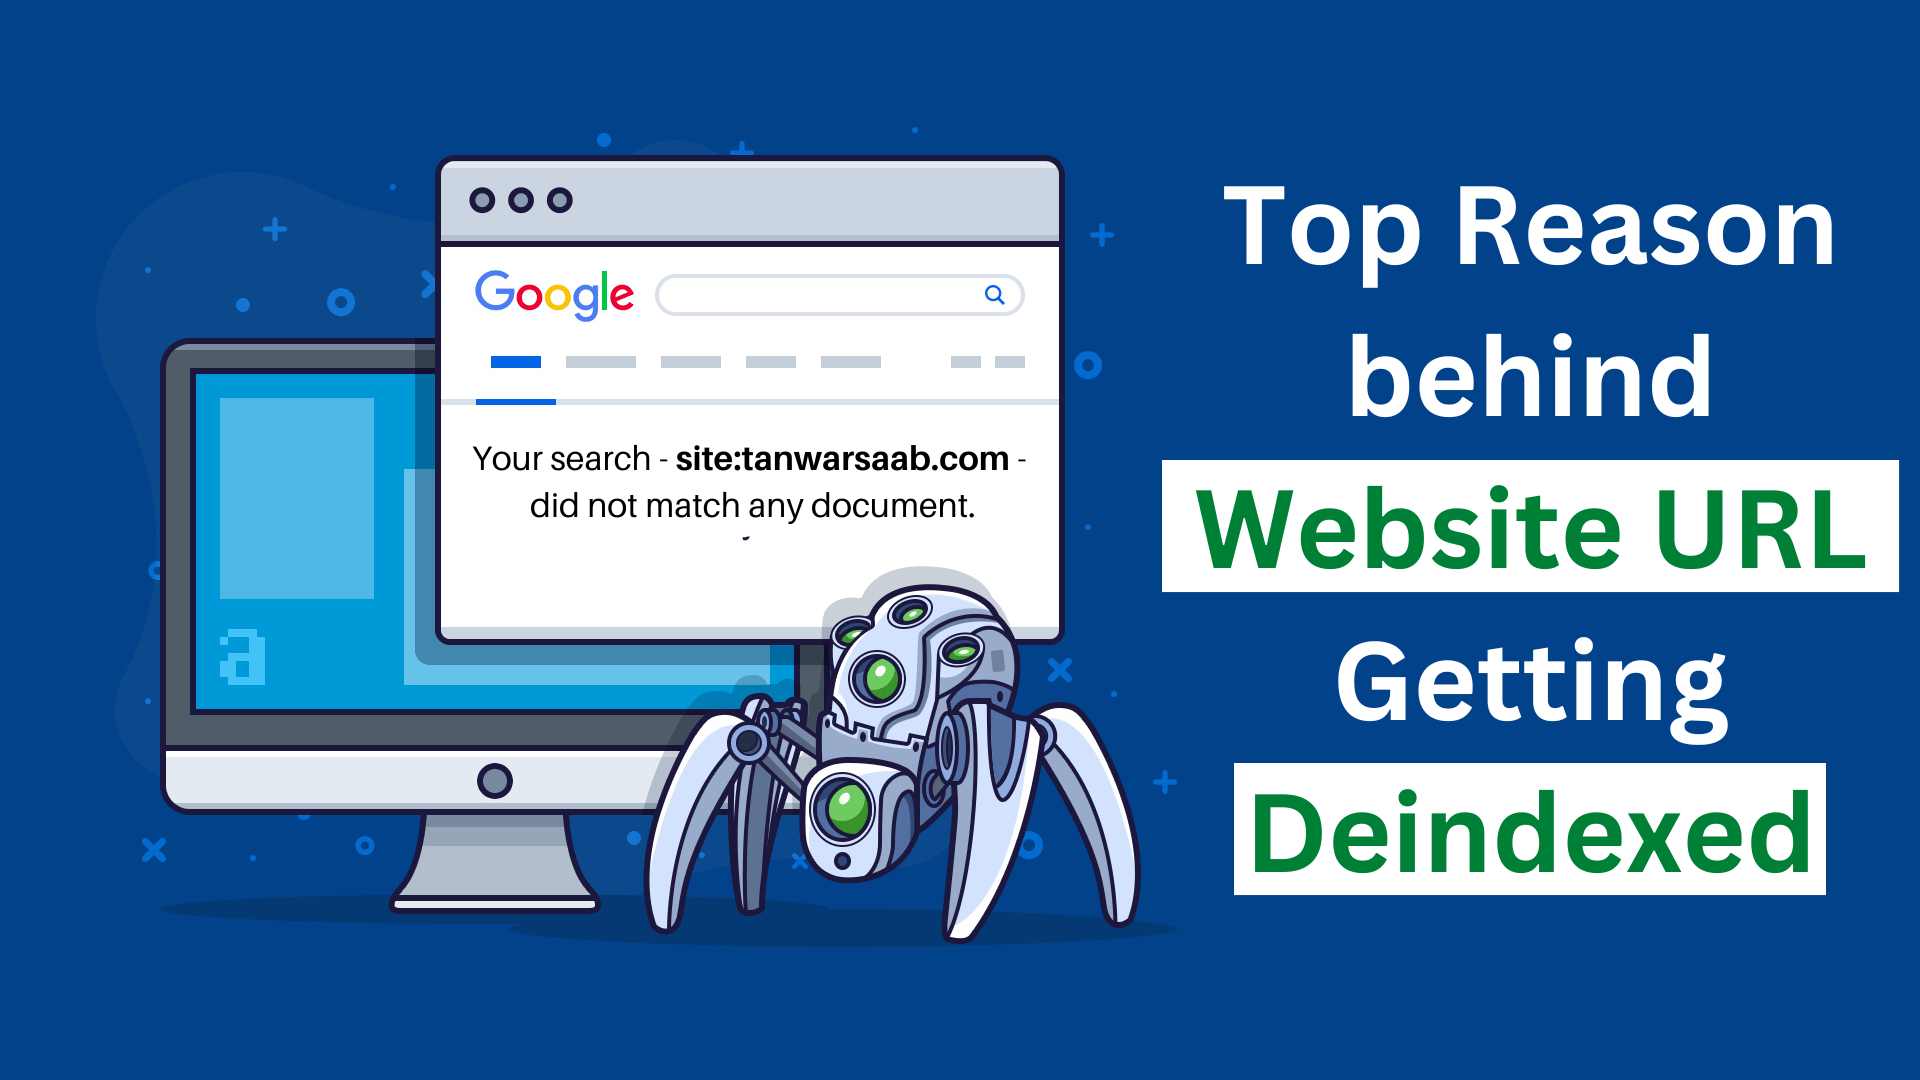 <b>Top Reason behind Website URL Getting Deindexed</b>